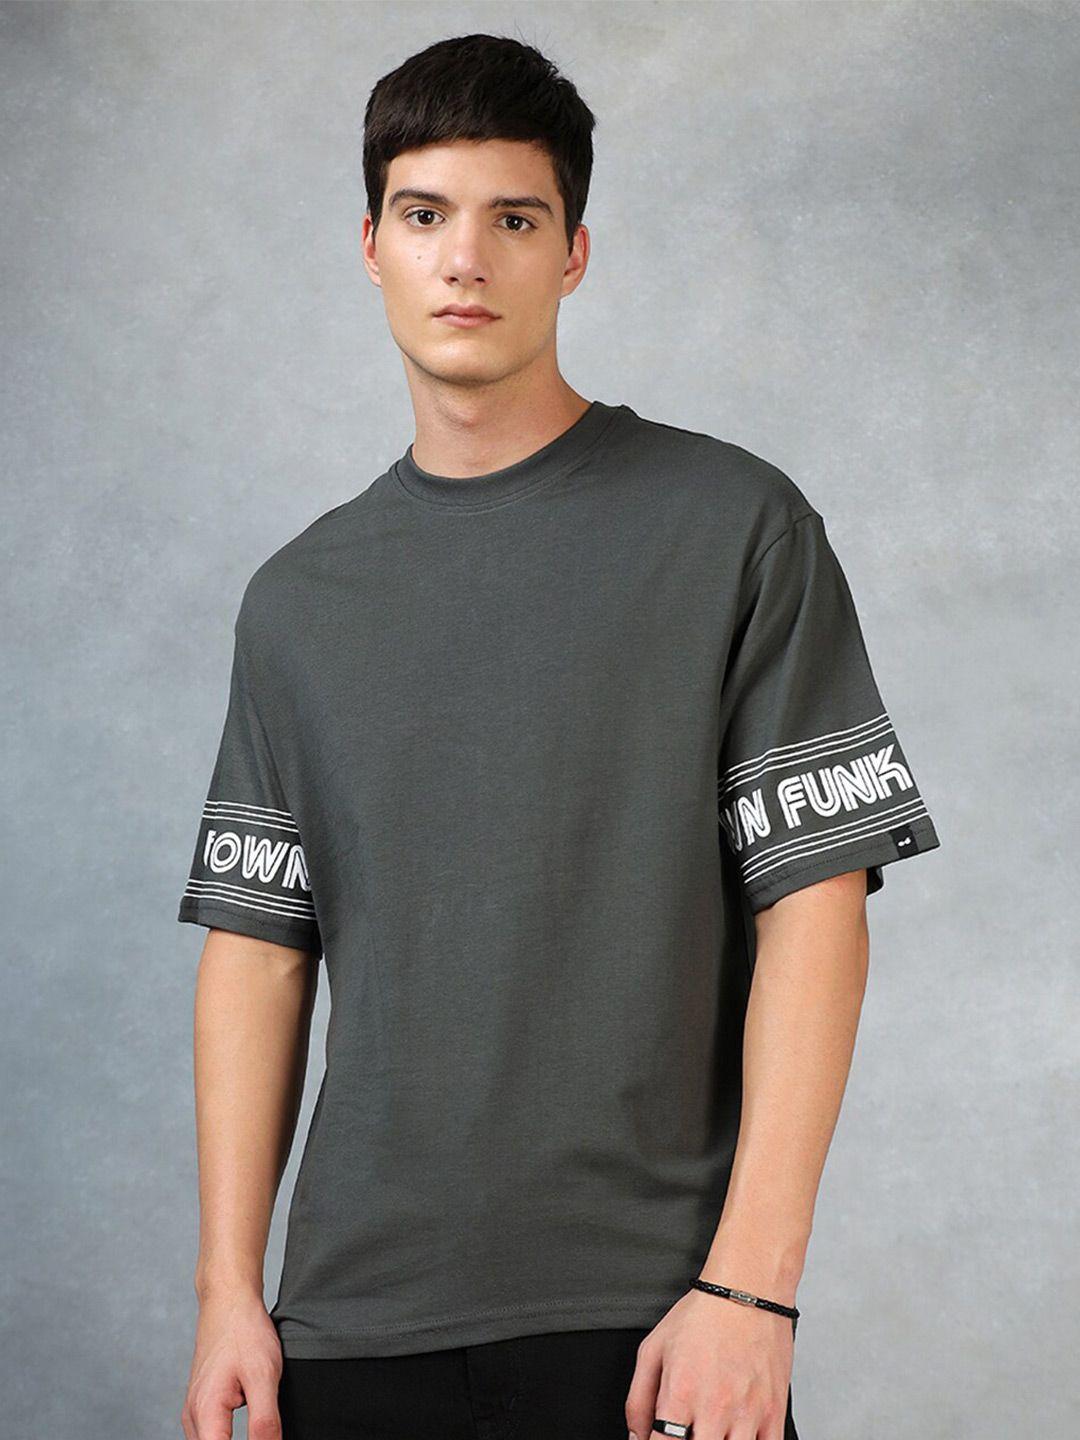 Bewakoof Grey Typography Printed Drop-Shoulder Oversized Cotton T-shirt